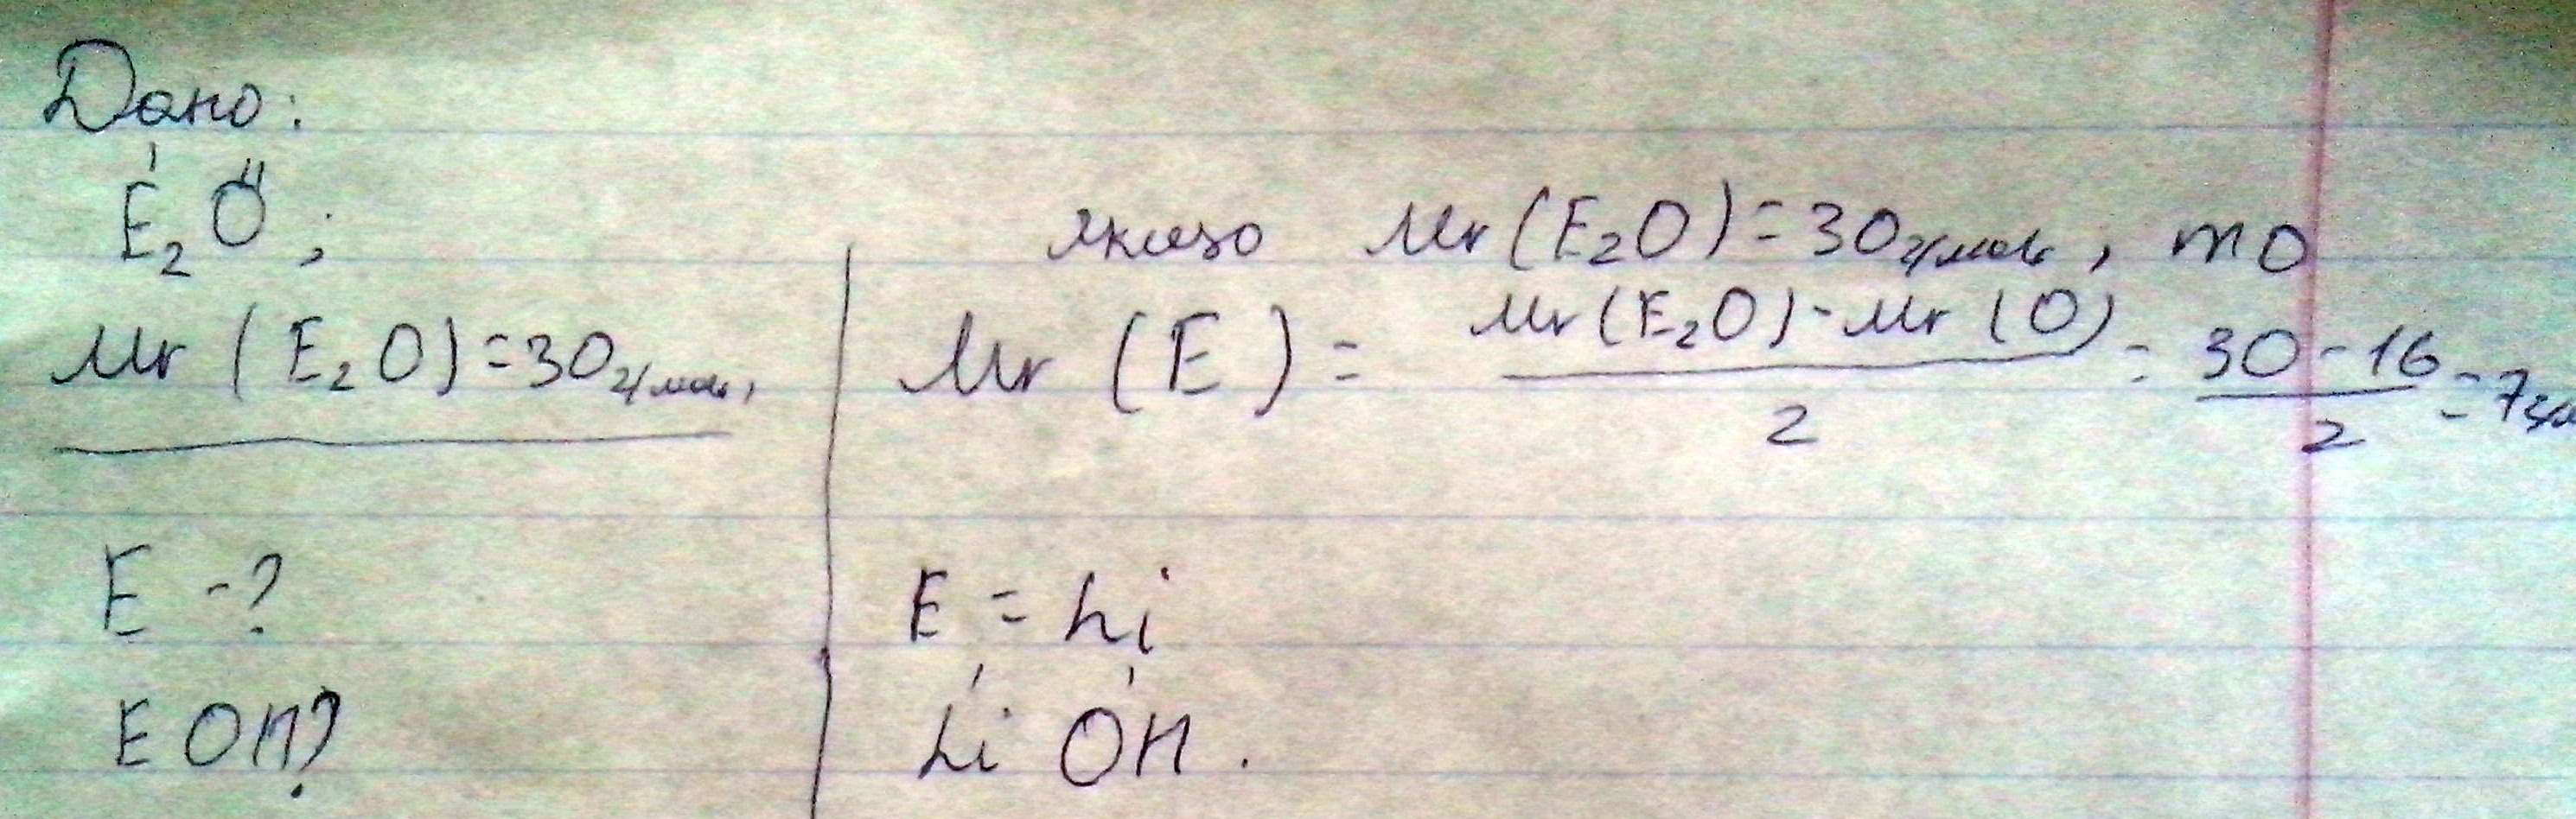 Оксид химического элемента 1 группы имеет молярную массу 30, назвать элемент и составить формулу его гидраксида